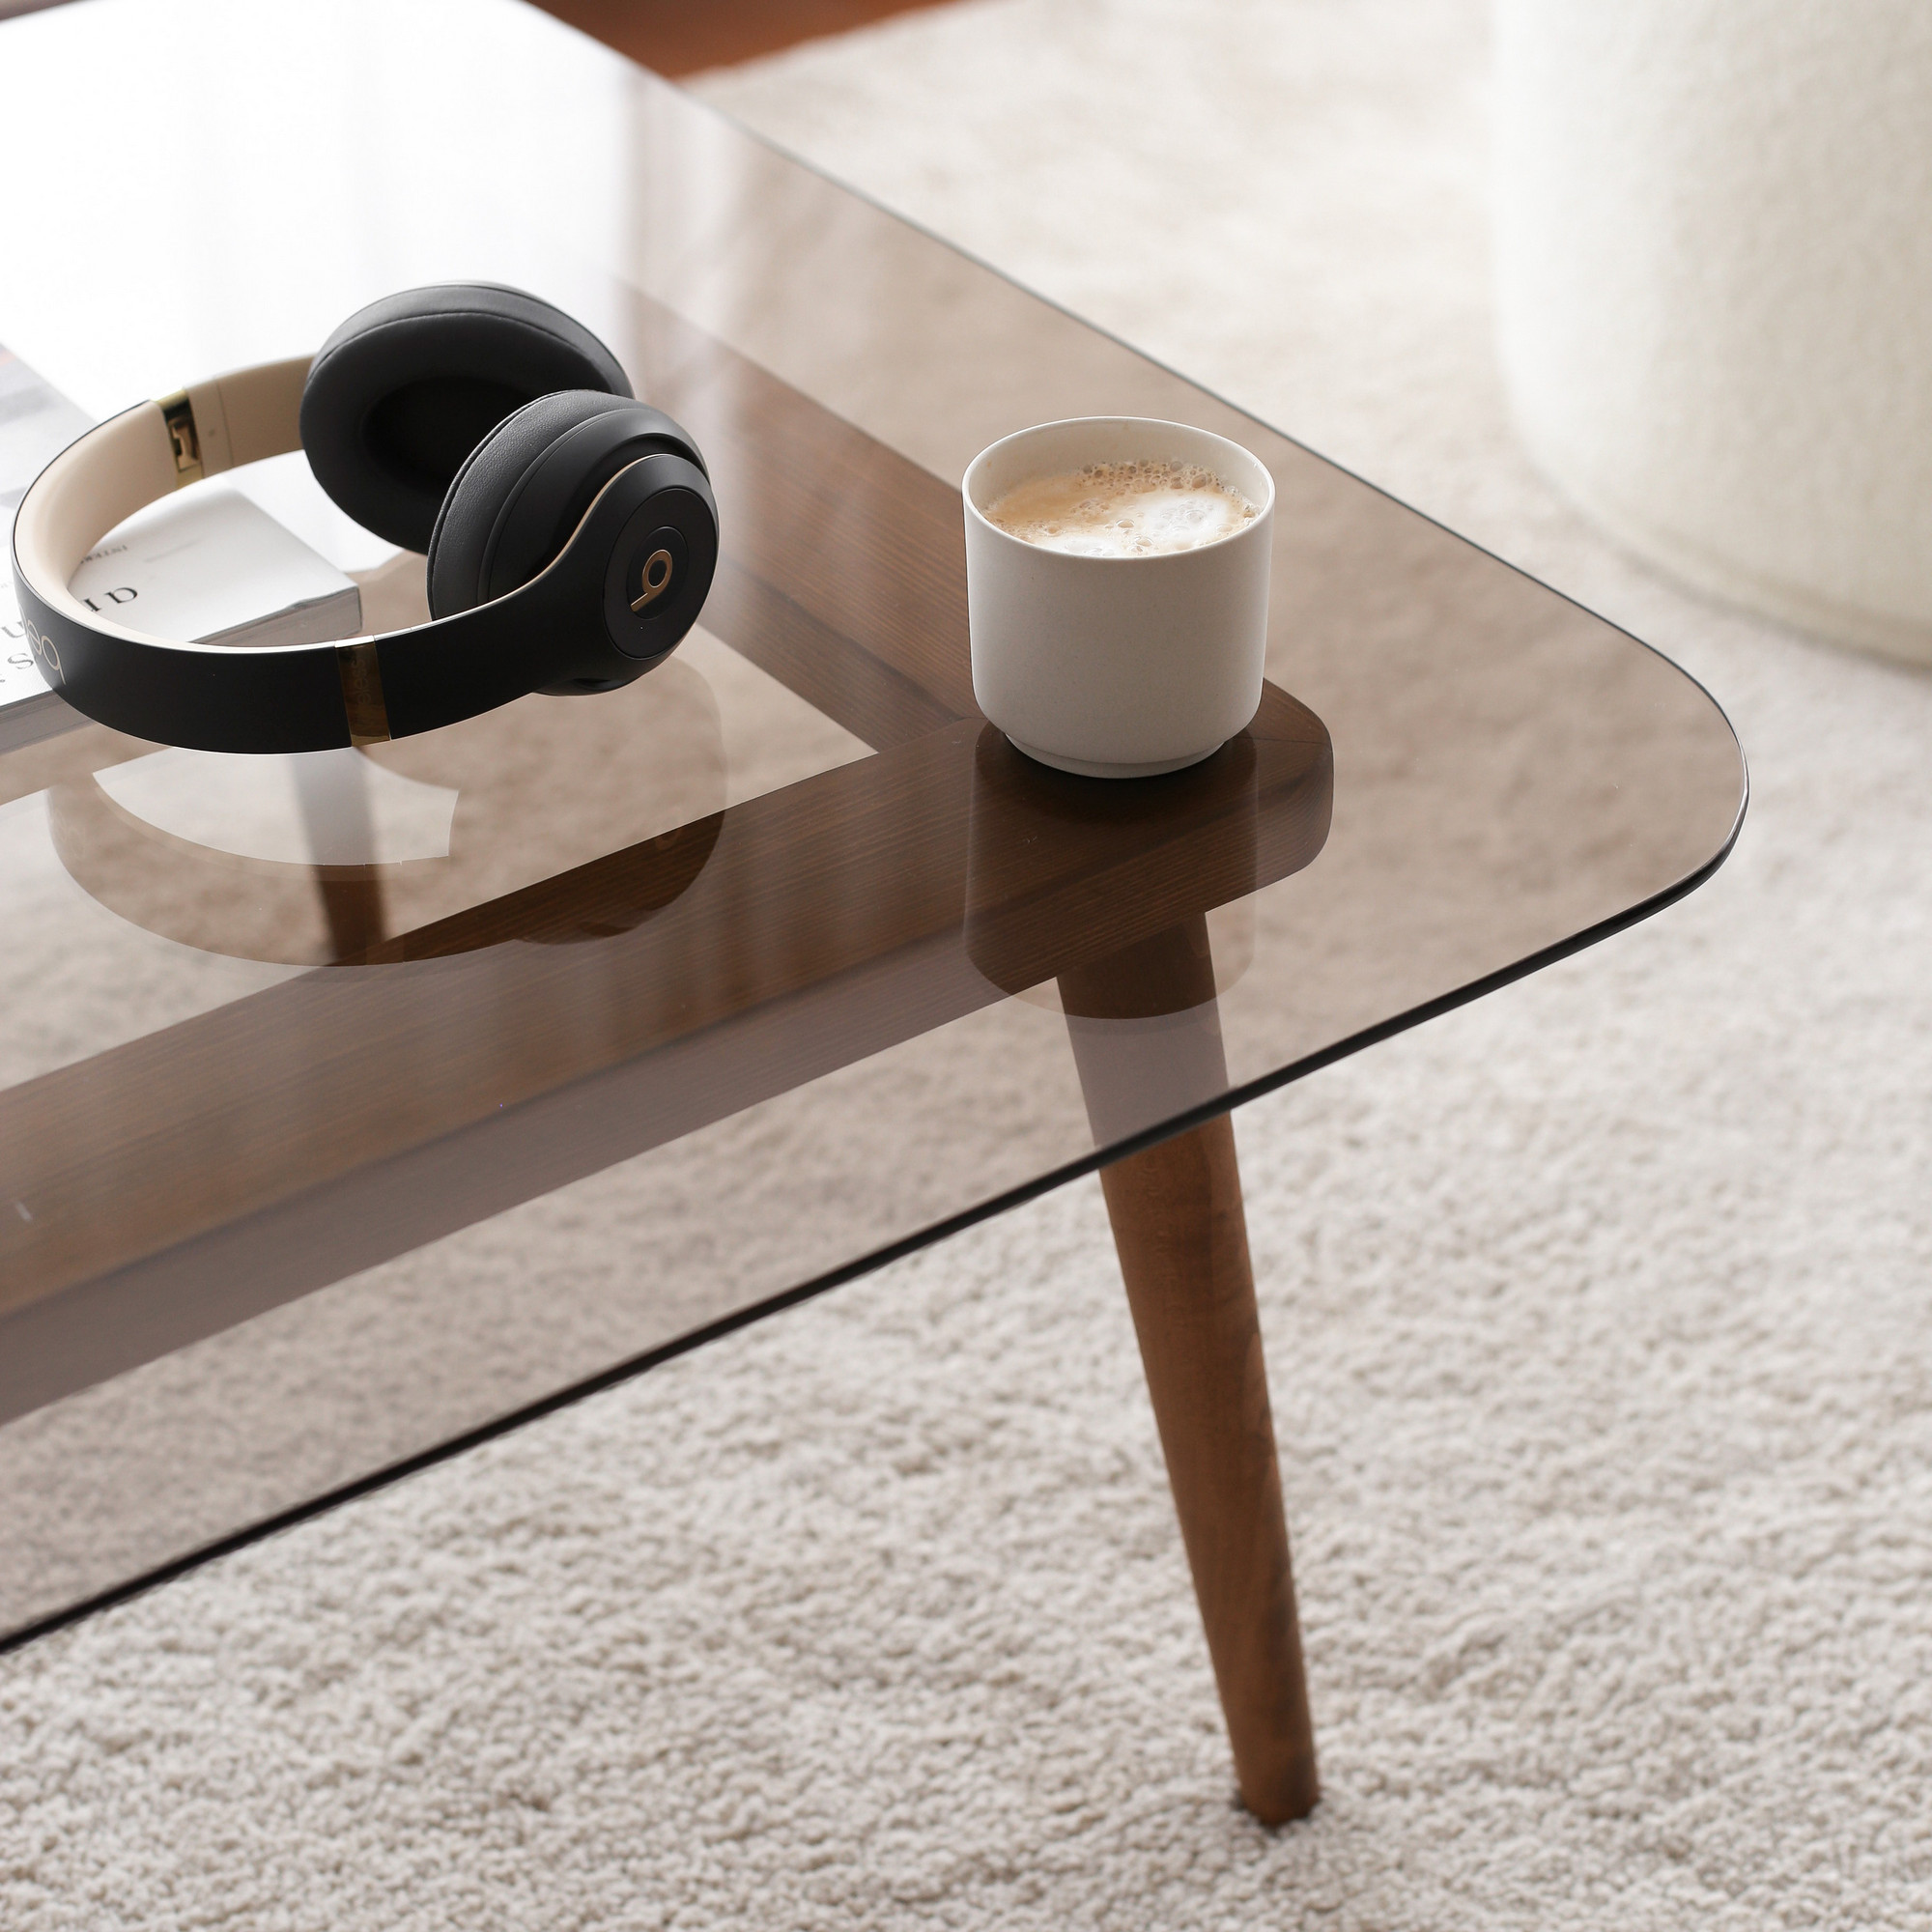 Soho kvadratiskt soffbord - Furuträ med rökfärgat glas - Morgon med kaffe och hörlurar